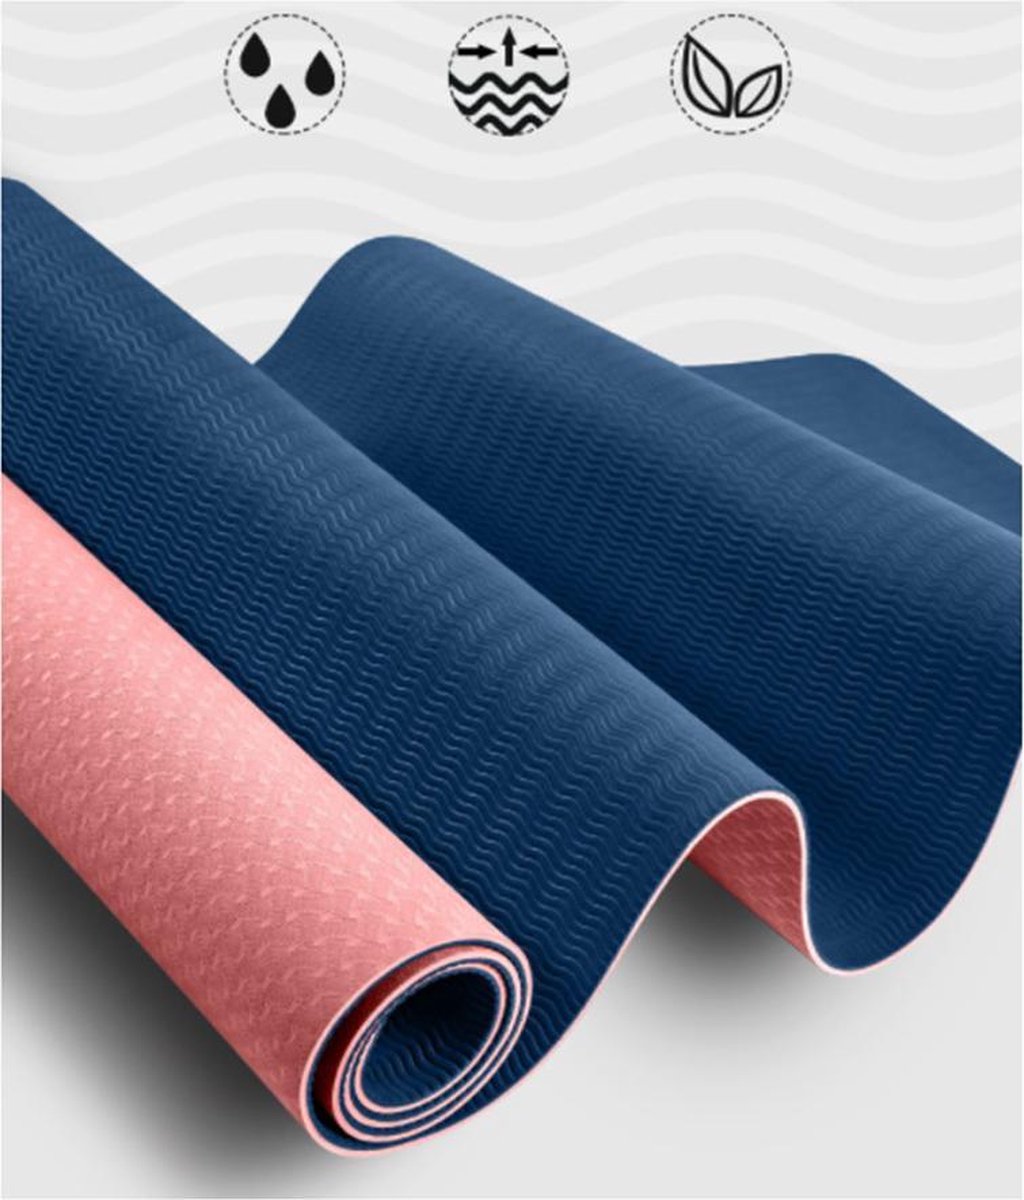 1x tapis yoga 1 cm épaisseur doux caoutchouc sangle transport